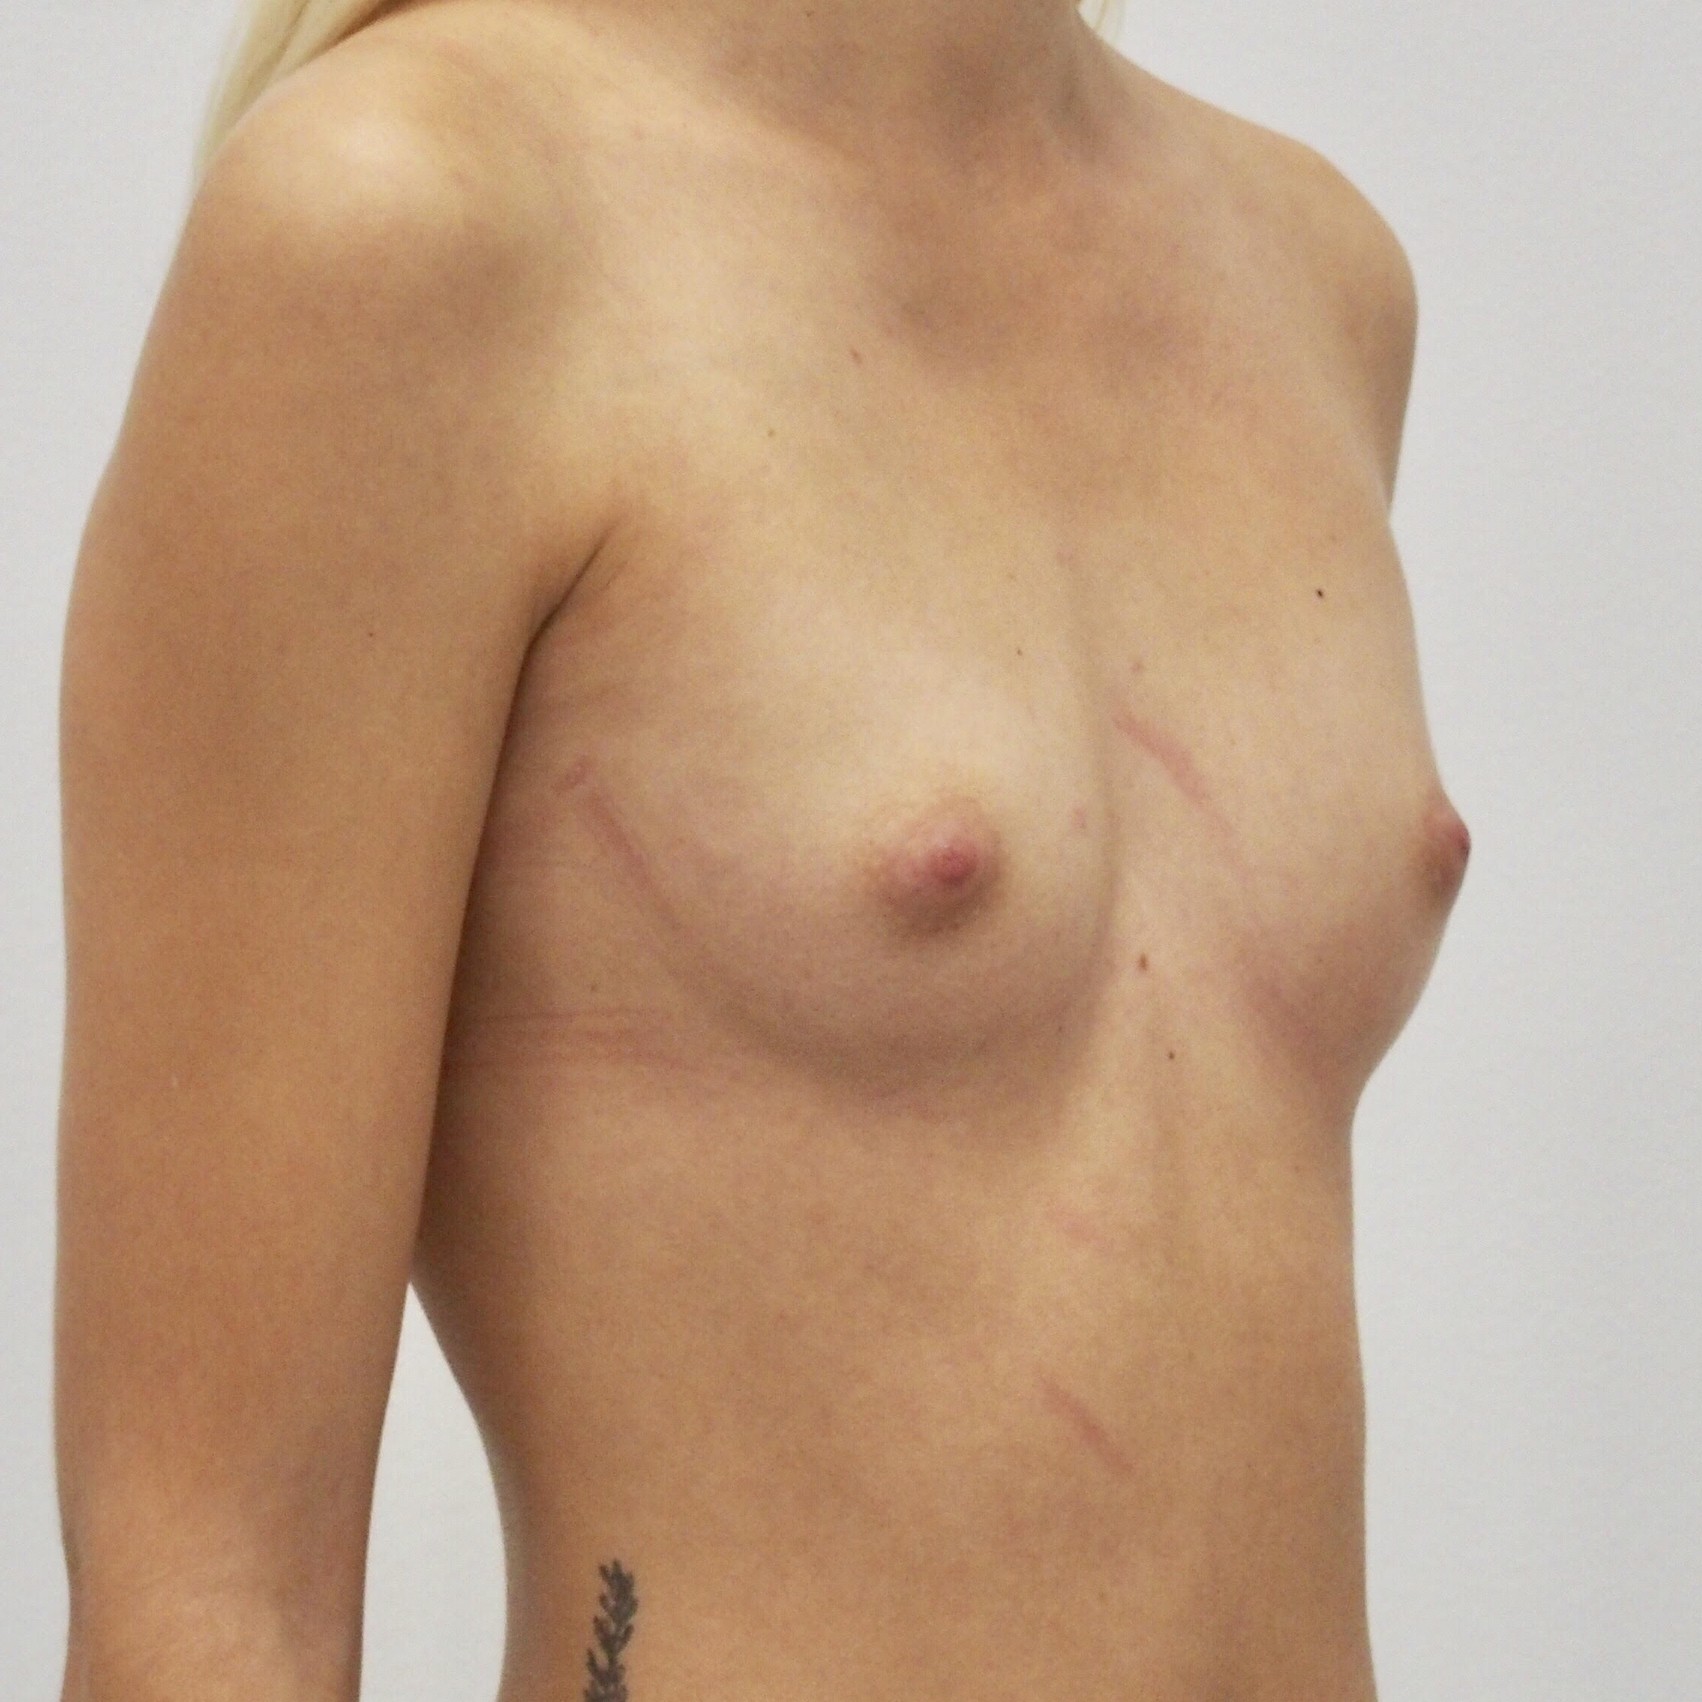 Klientka před a po zvětšení prsou. Použity byly kulaté implantáty o velikosti 255 mililitrů. Vloženy byly podprsní rýhou pod sval.
Operatér: MUDr. Petros Christodoulou